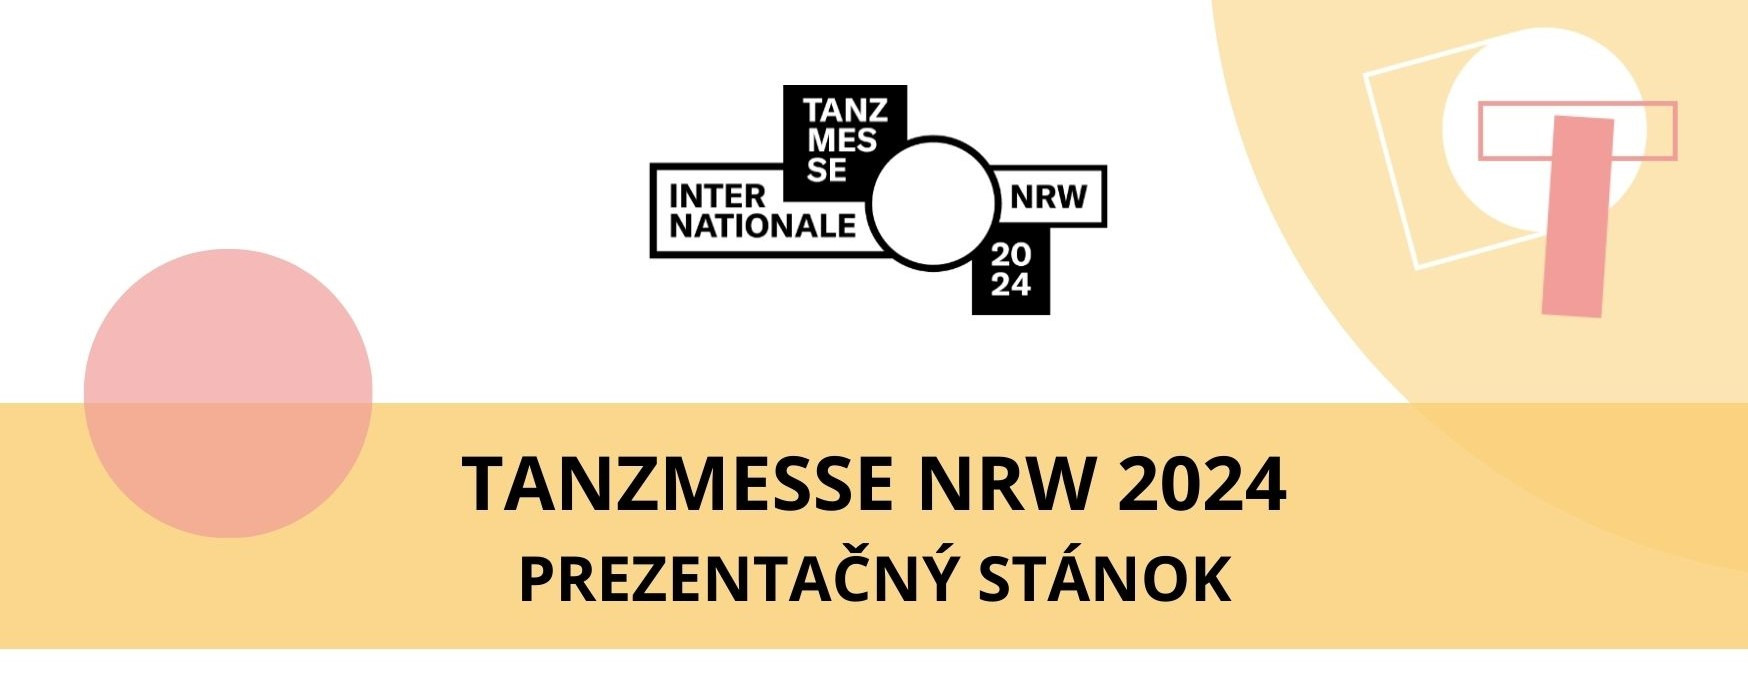 INTERNATIONALE TANZMESSE NRW 2024